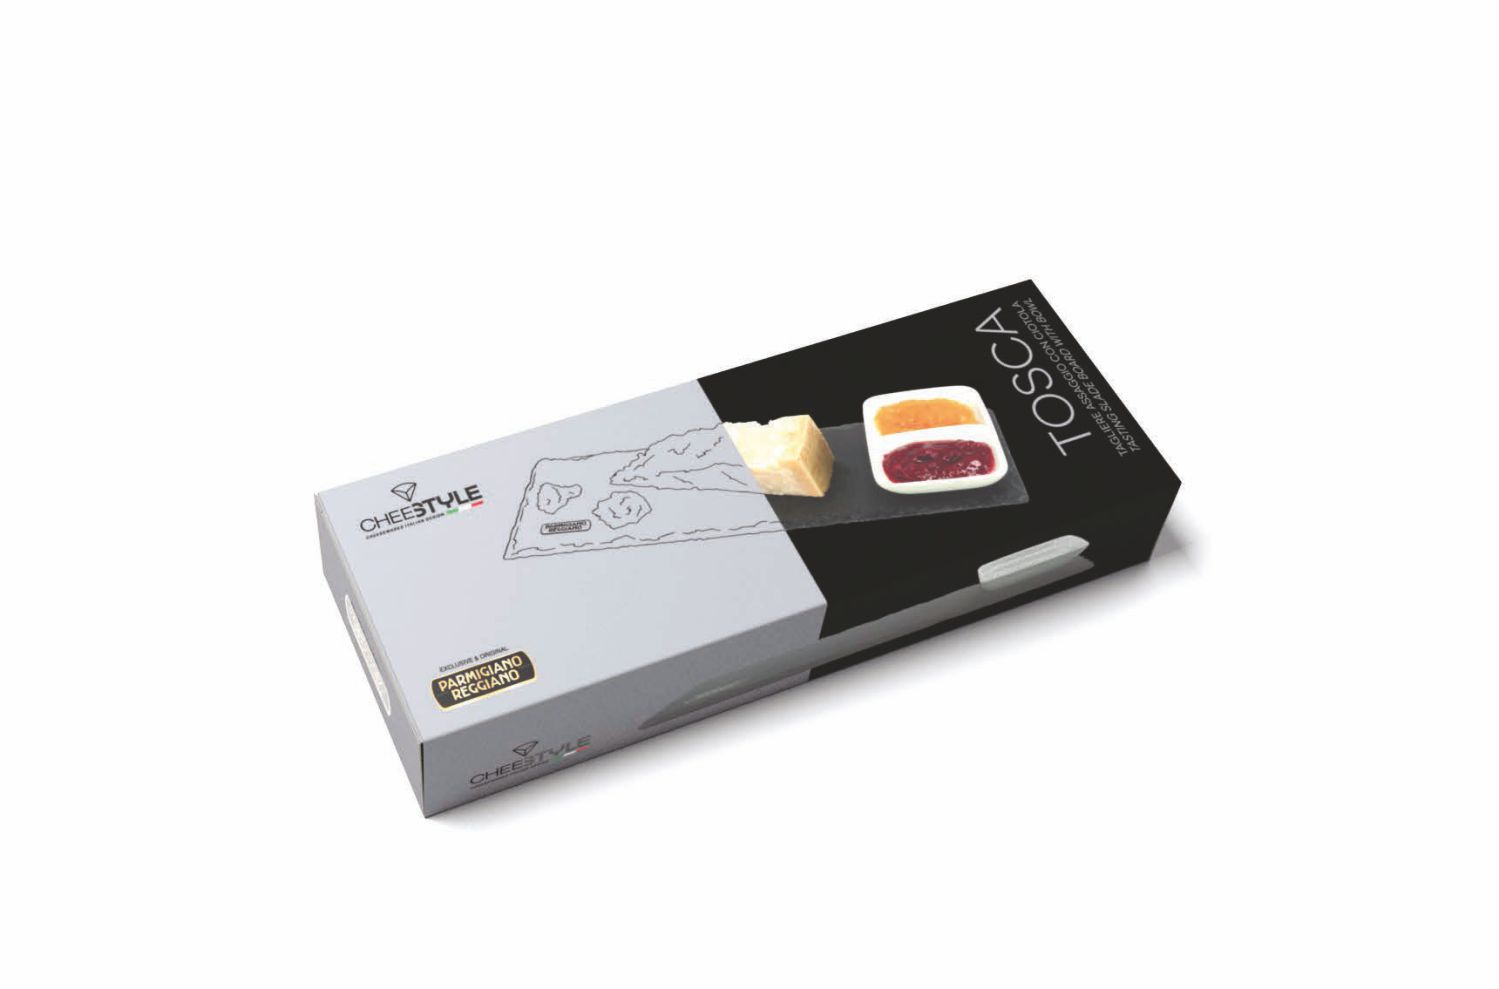 Tagliere per assaggi “Tosca” in ardesia con marchio Parmigiano Reggiano